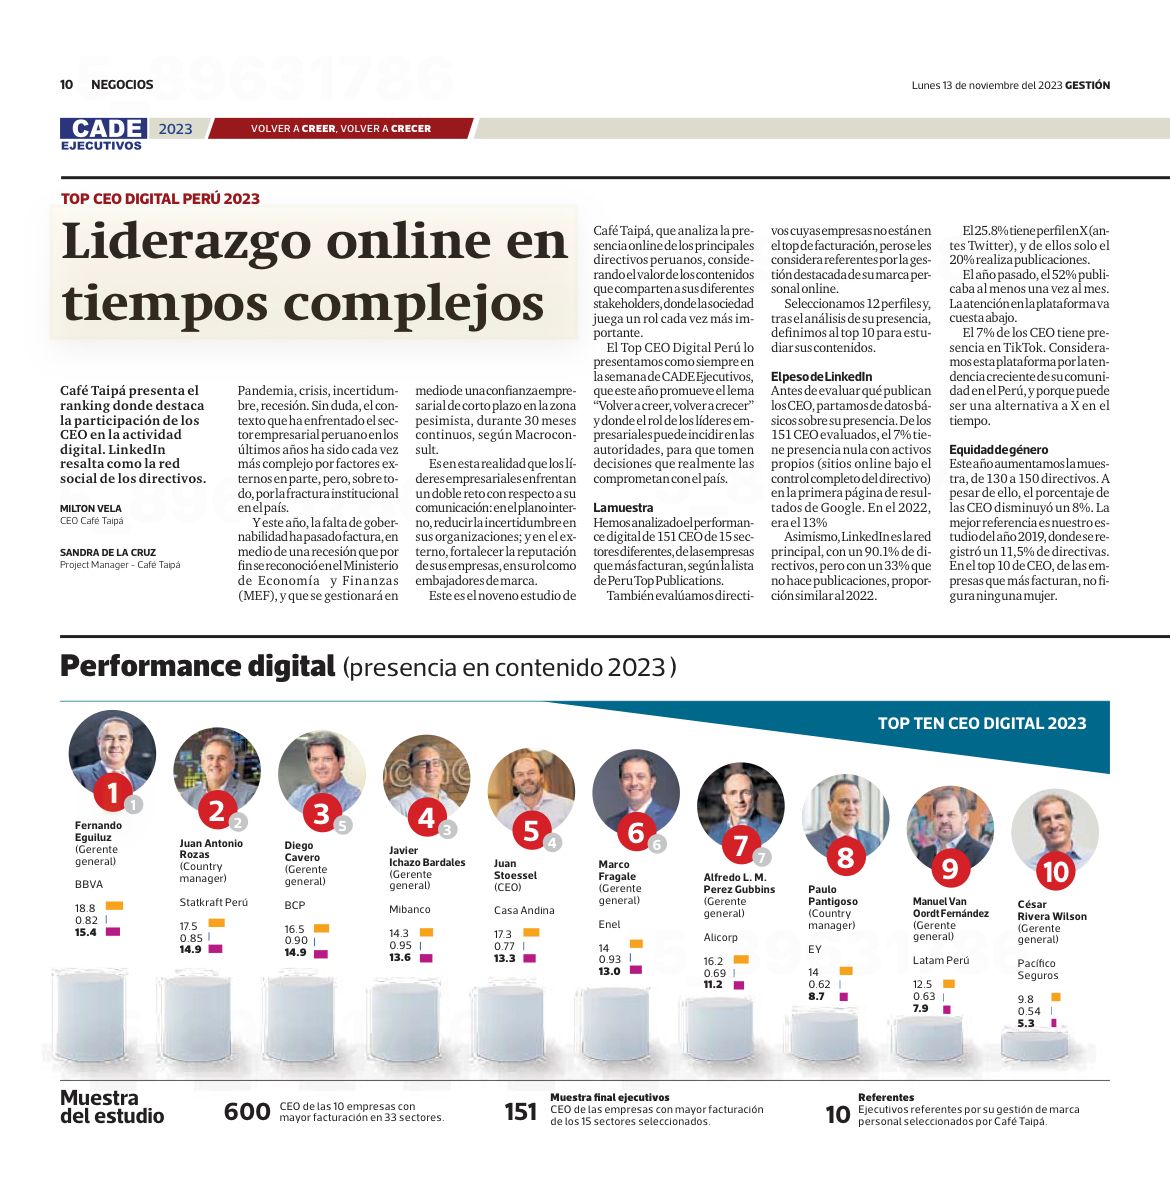 Feliz de estar en el Ranking #TopCEODigitalPerú que destaca a líderes que marcan la diferencia en el mundo digital. ¡Este logro es de todo mi equipo! Gracias @CafeTaipa por la mención y felicito a los líderes top con quien comparto espacio en el ranking 👏 #SomosBuenaEnergía